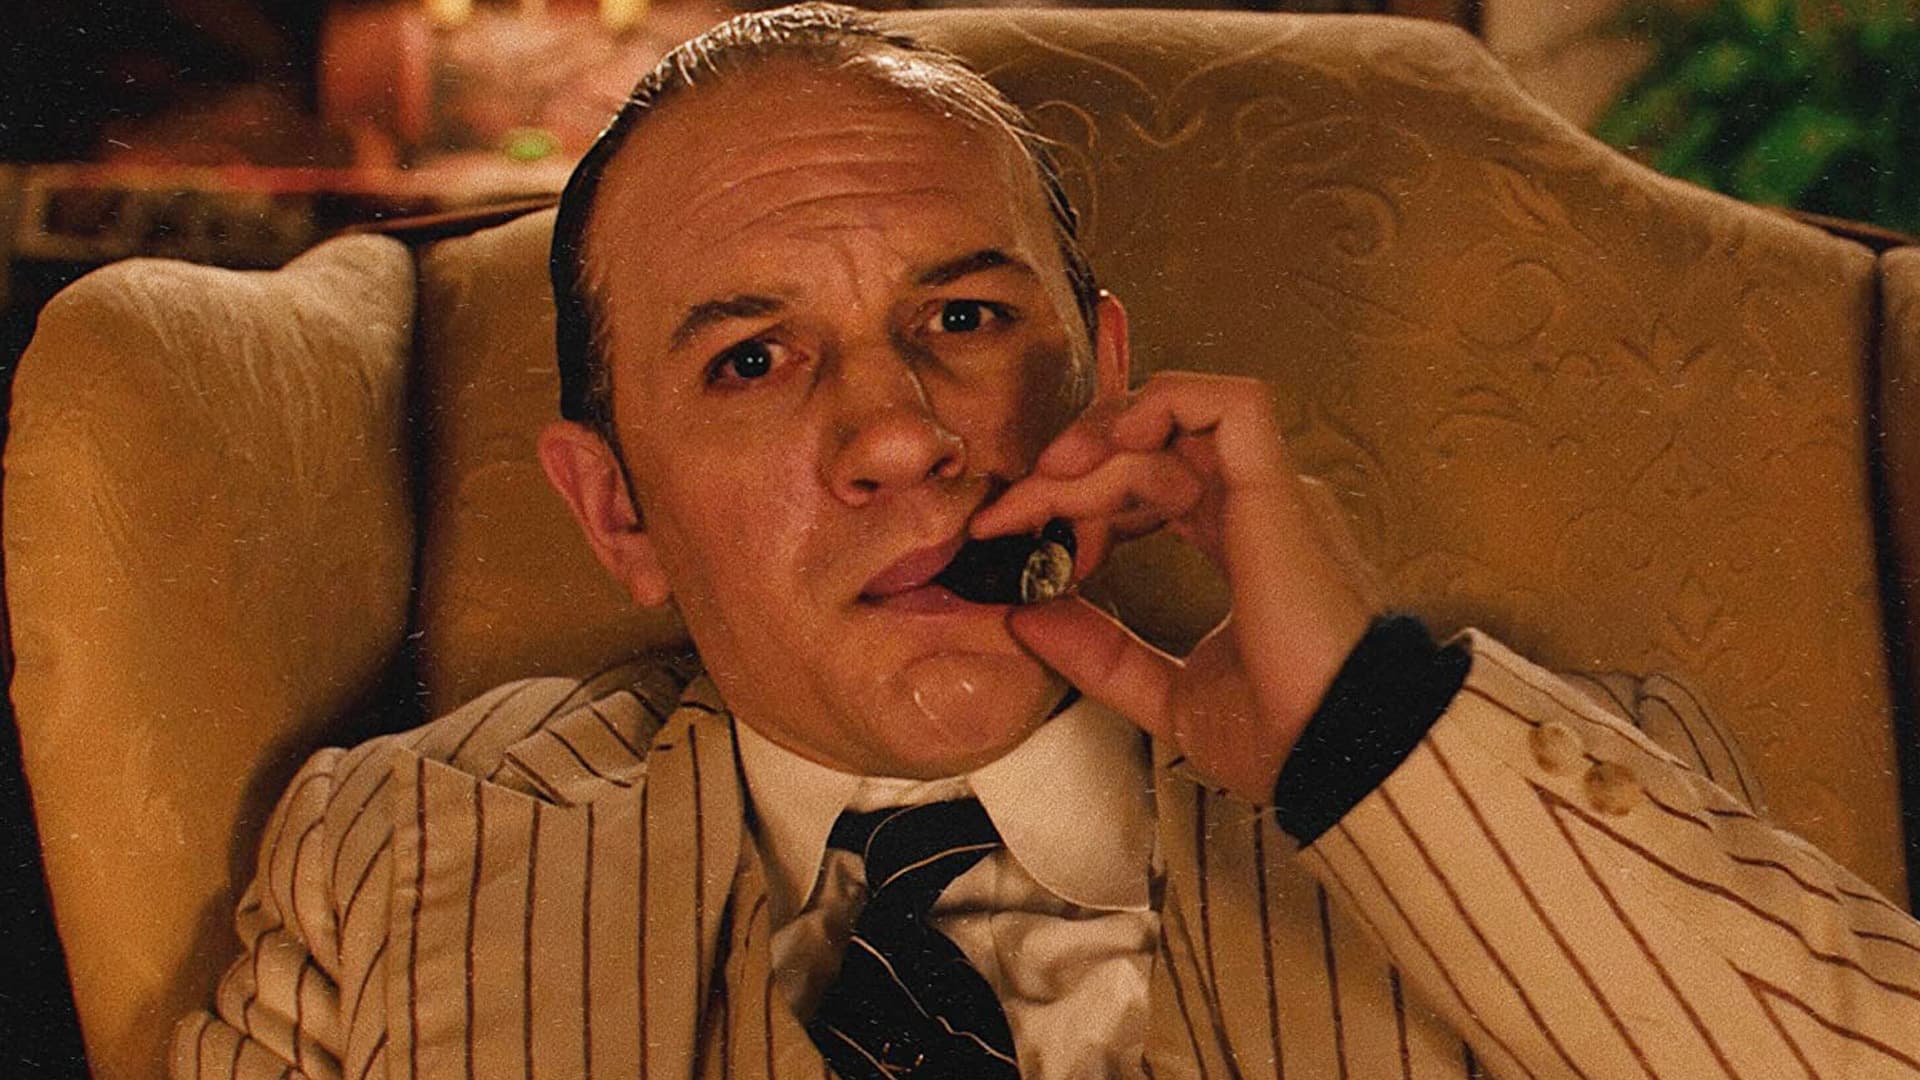 Stasera in TV anche Capone, il film con Tom Hardy. I film da vedere oggi, martedì 20 aprile 2021